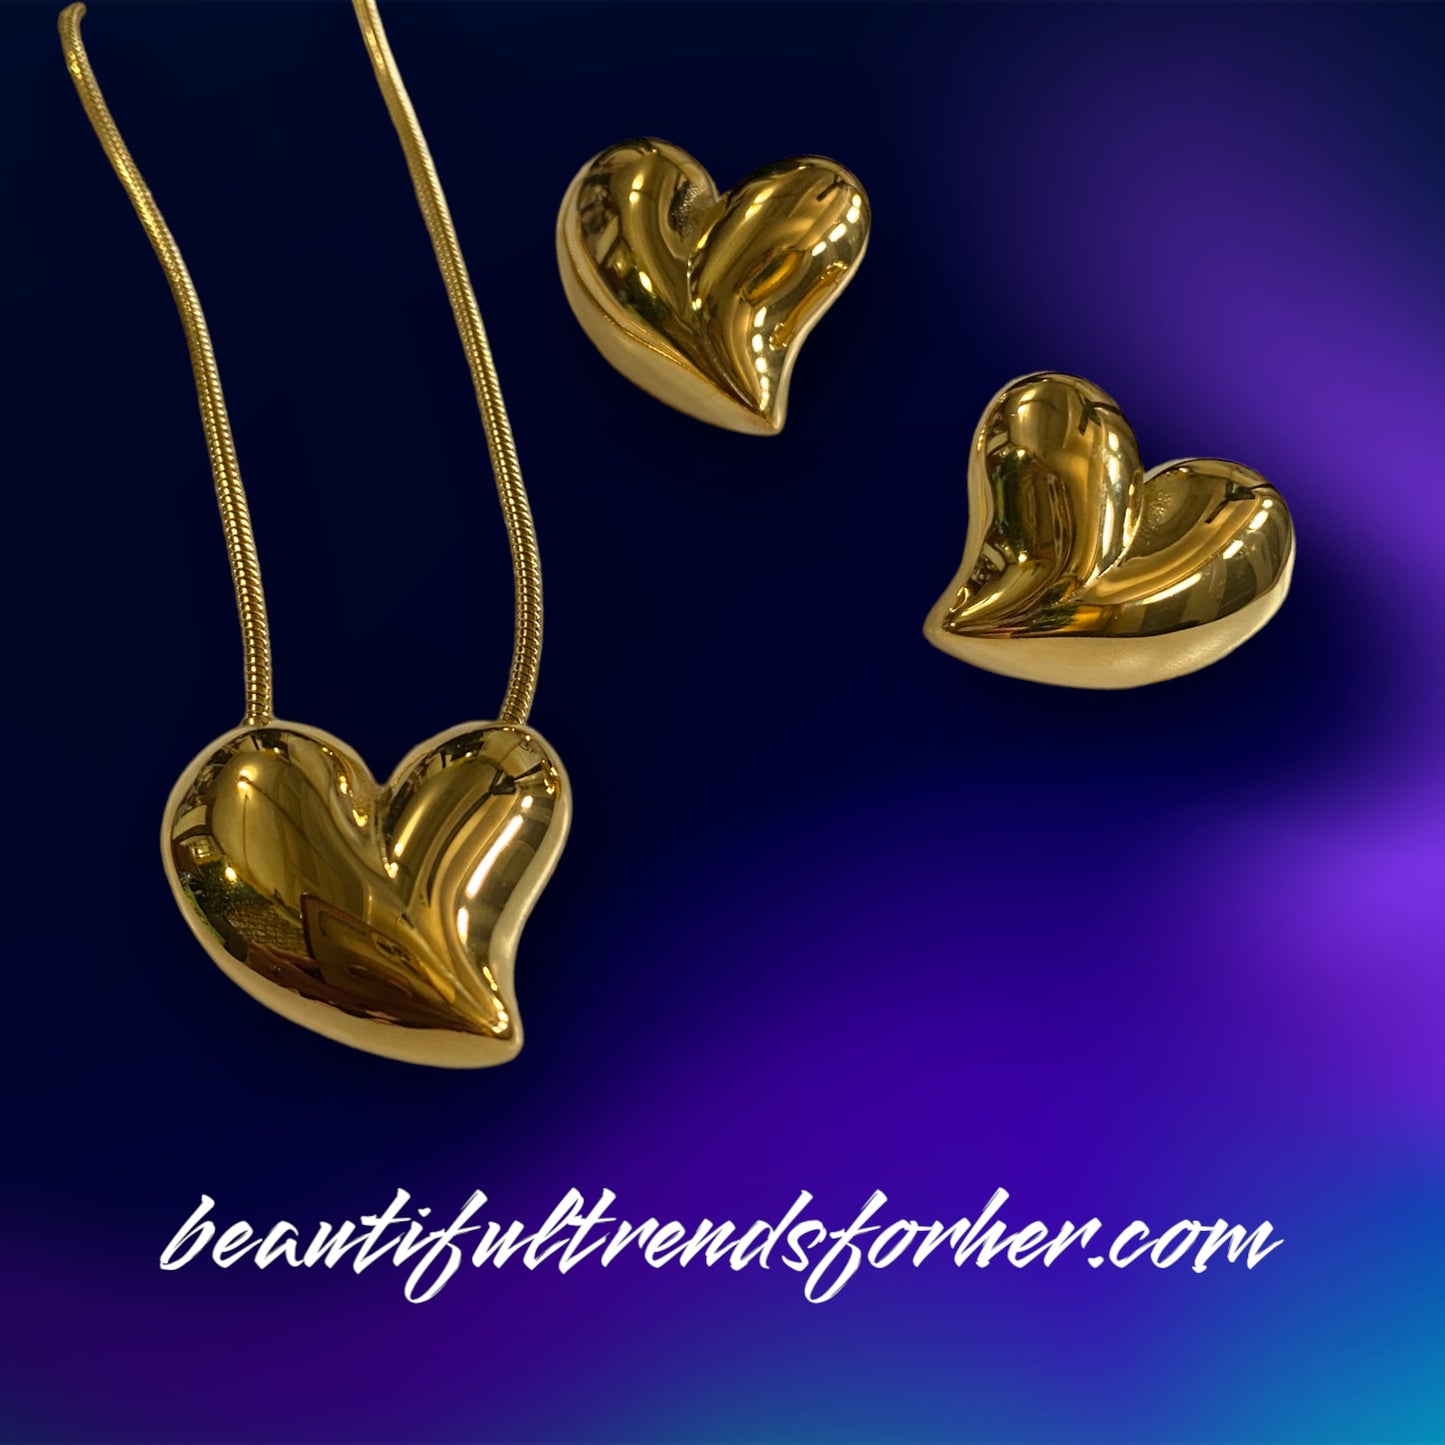 Un set de lujo en forma de corazones Acero Inoxidable con baño de oro de 18k